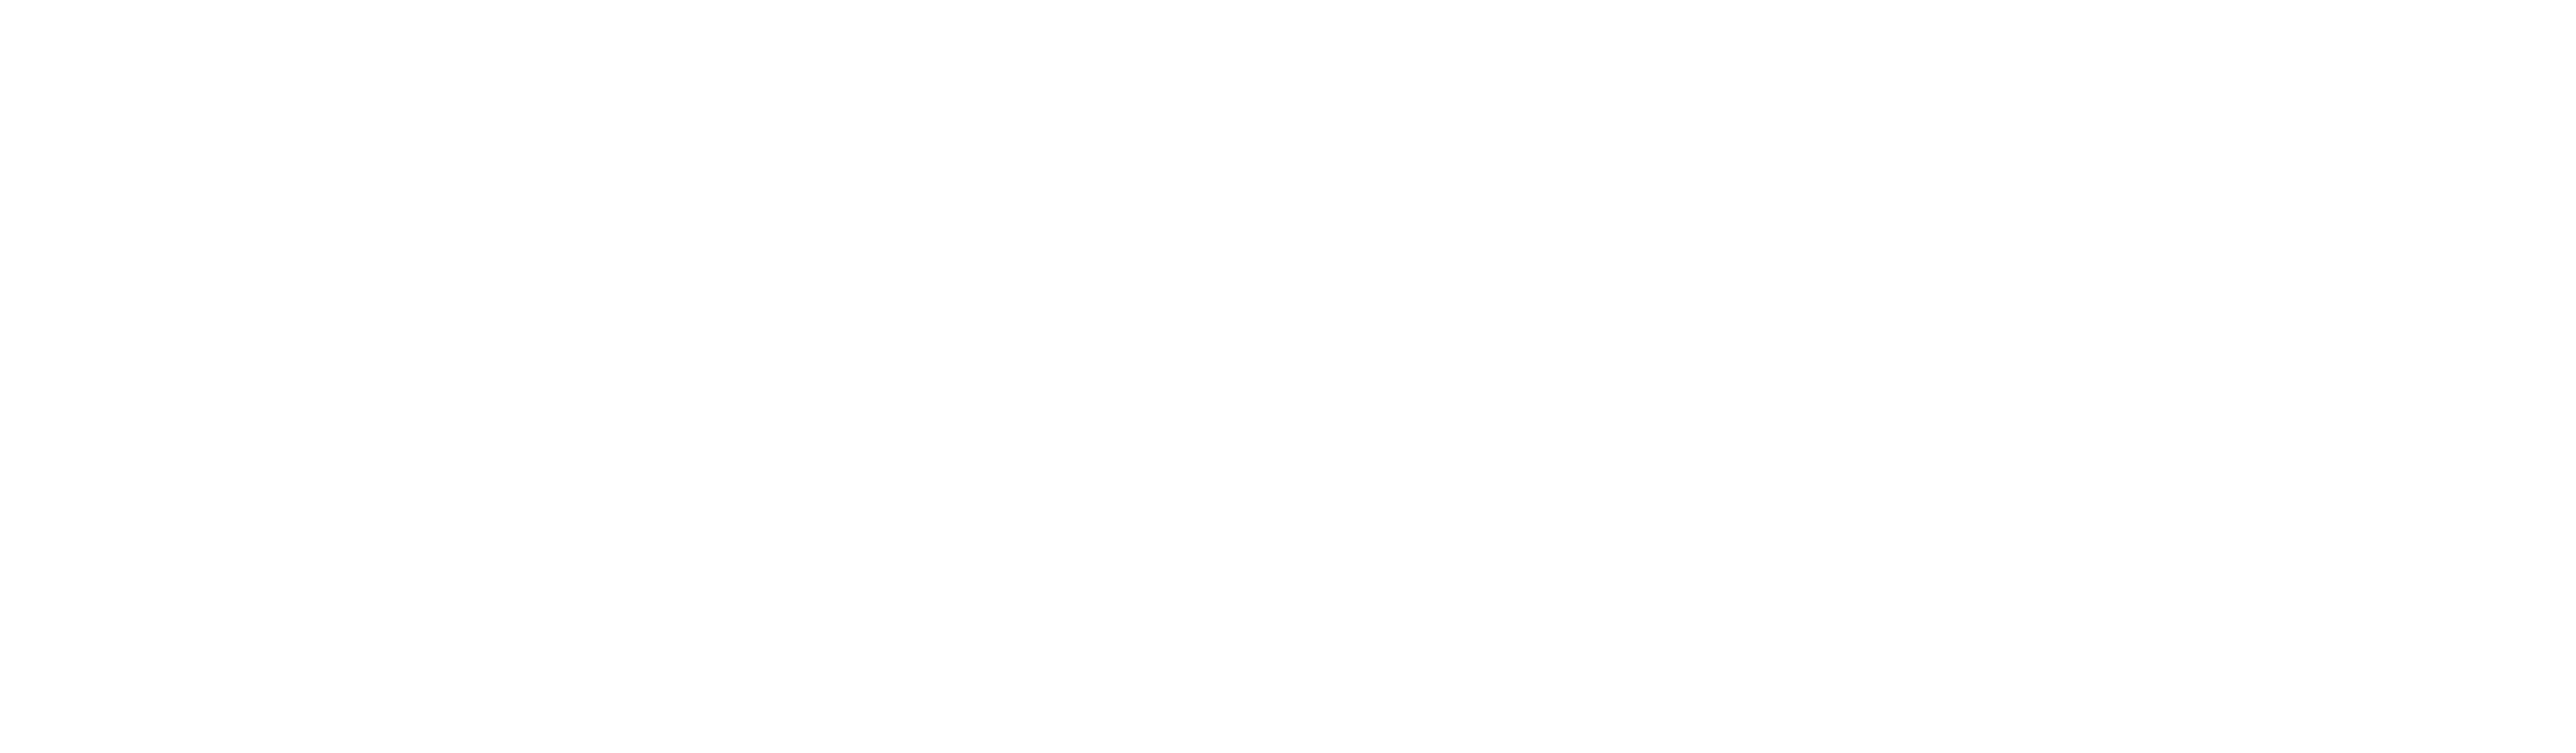 Part of logo - Shiplink textmark